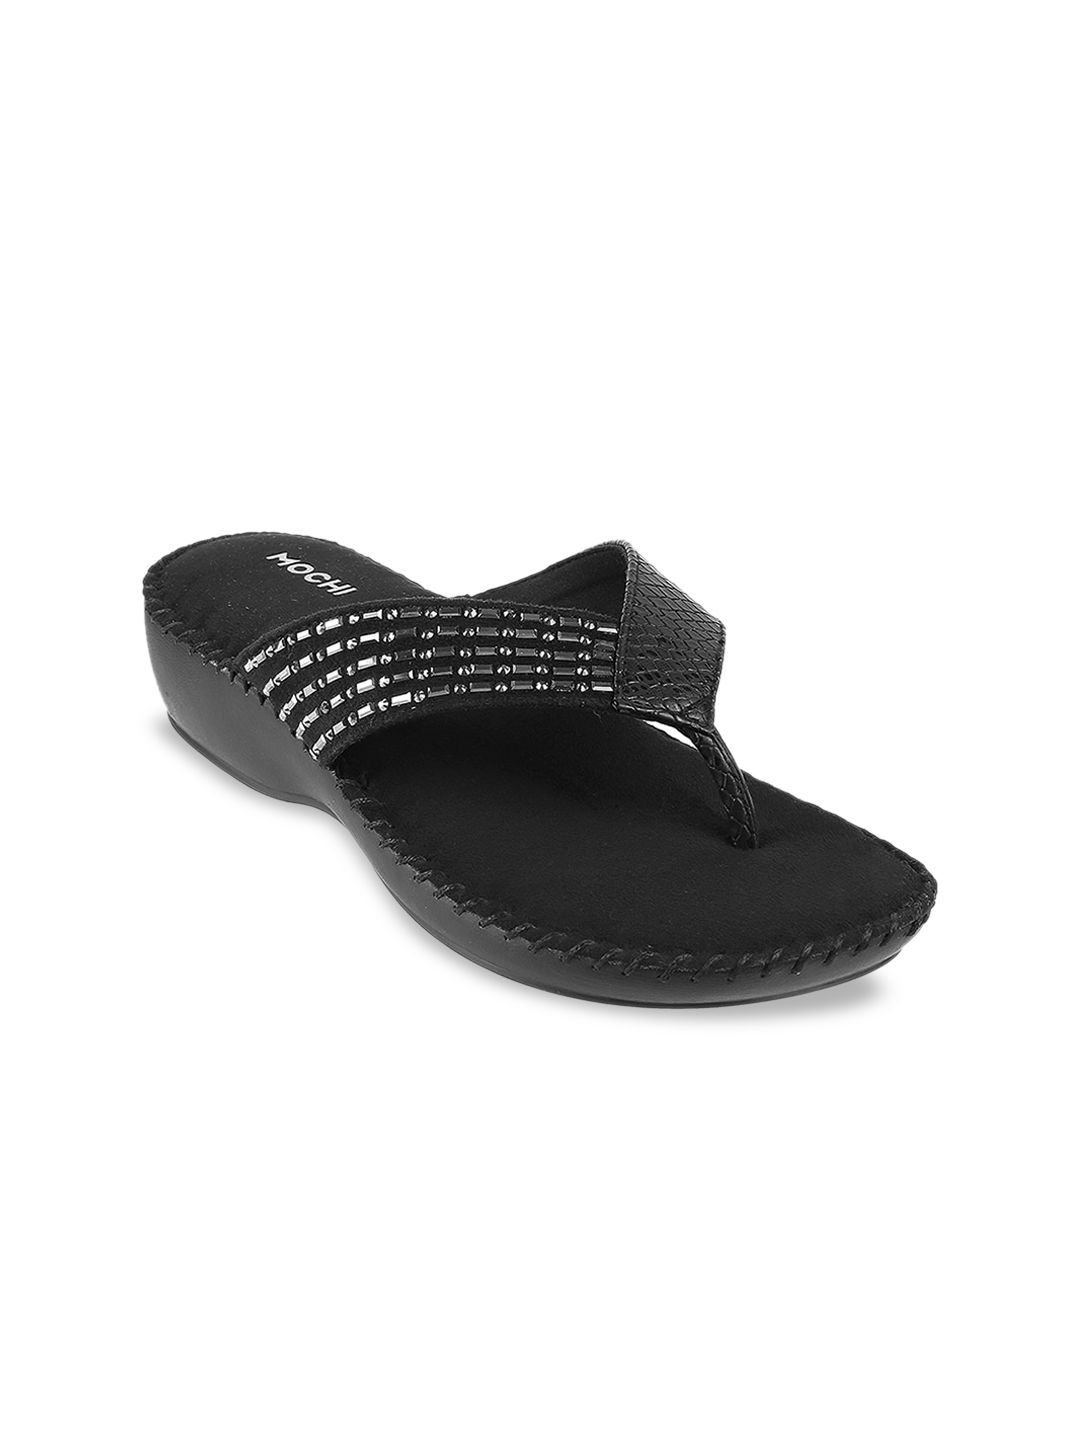 Mochi Black Embellished Comfort Sandals Price in India